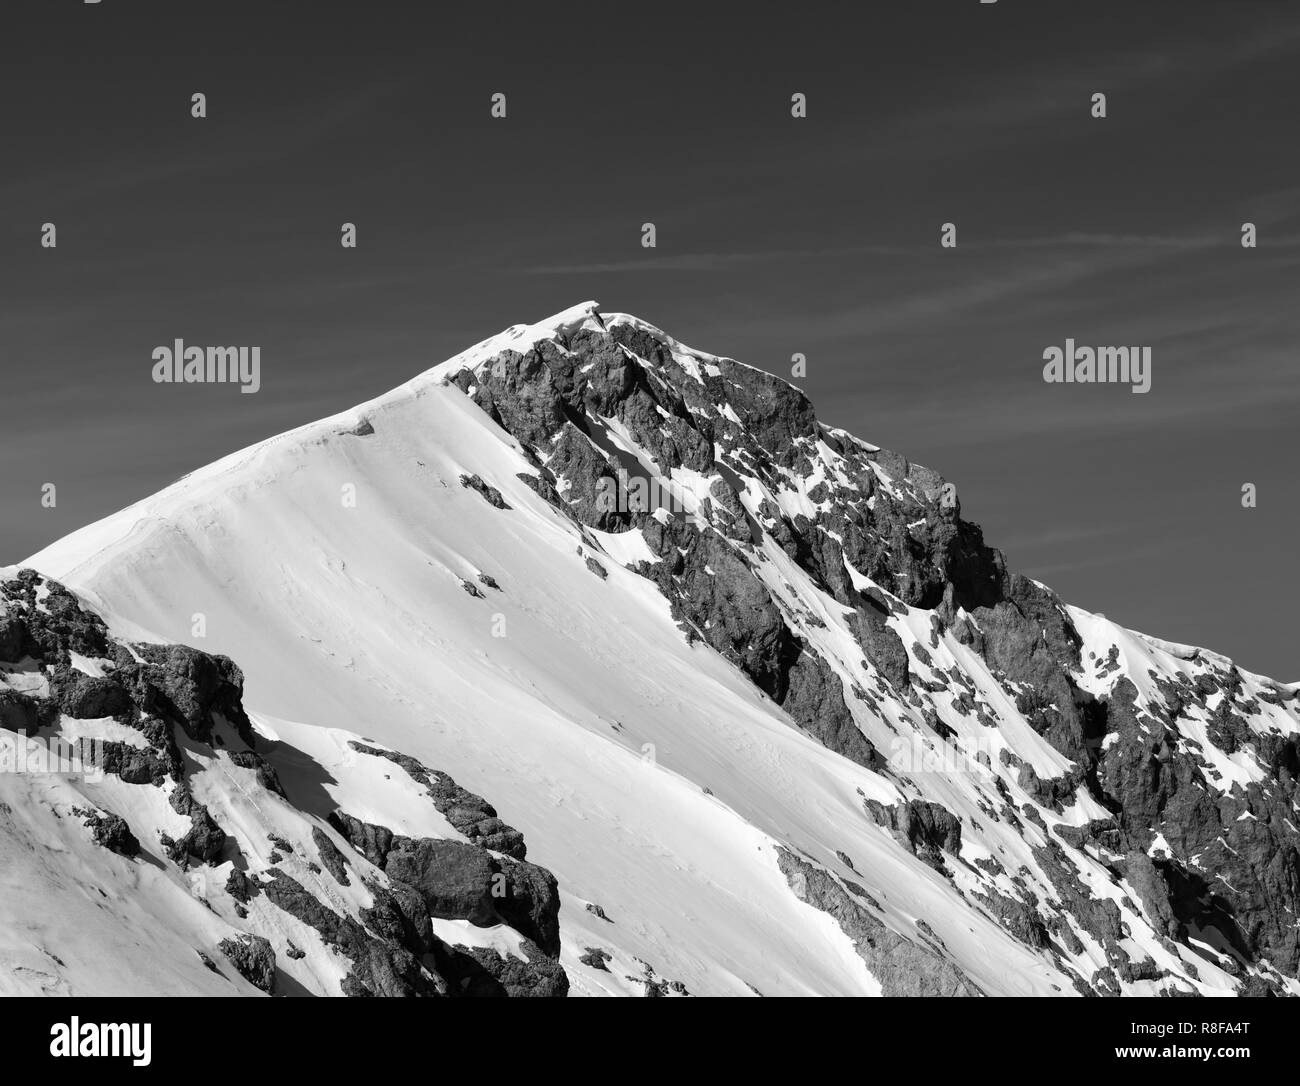 Haut de montagnes avec corniche de neige. La Turquie, Monts Taurus centrale, Aladaglar (Anti-Taurus). Paysage aux tons noir et blanc. Banque D'Images